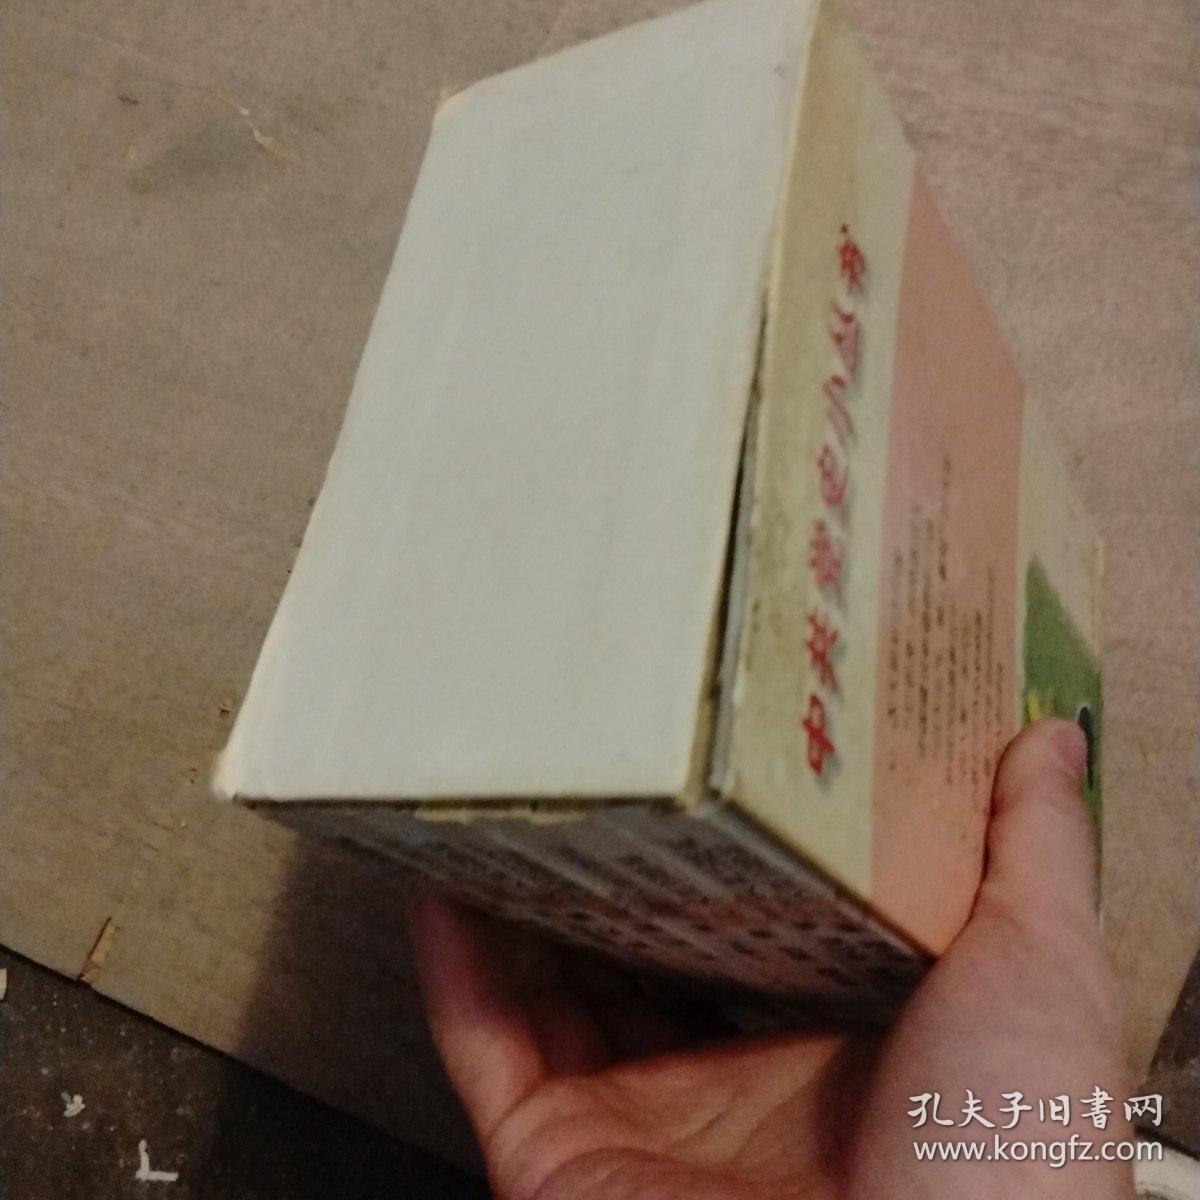 中共党史小丛书（全套9本）盒装